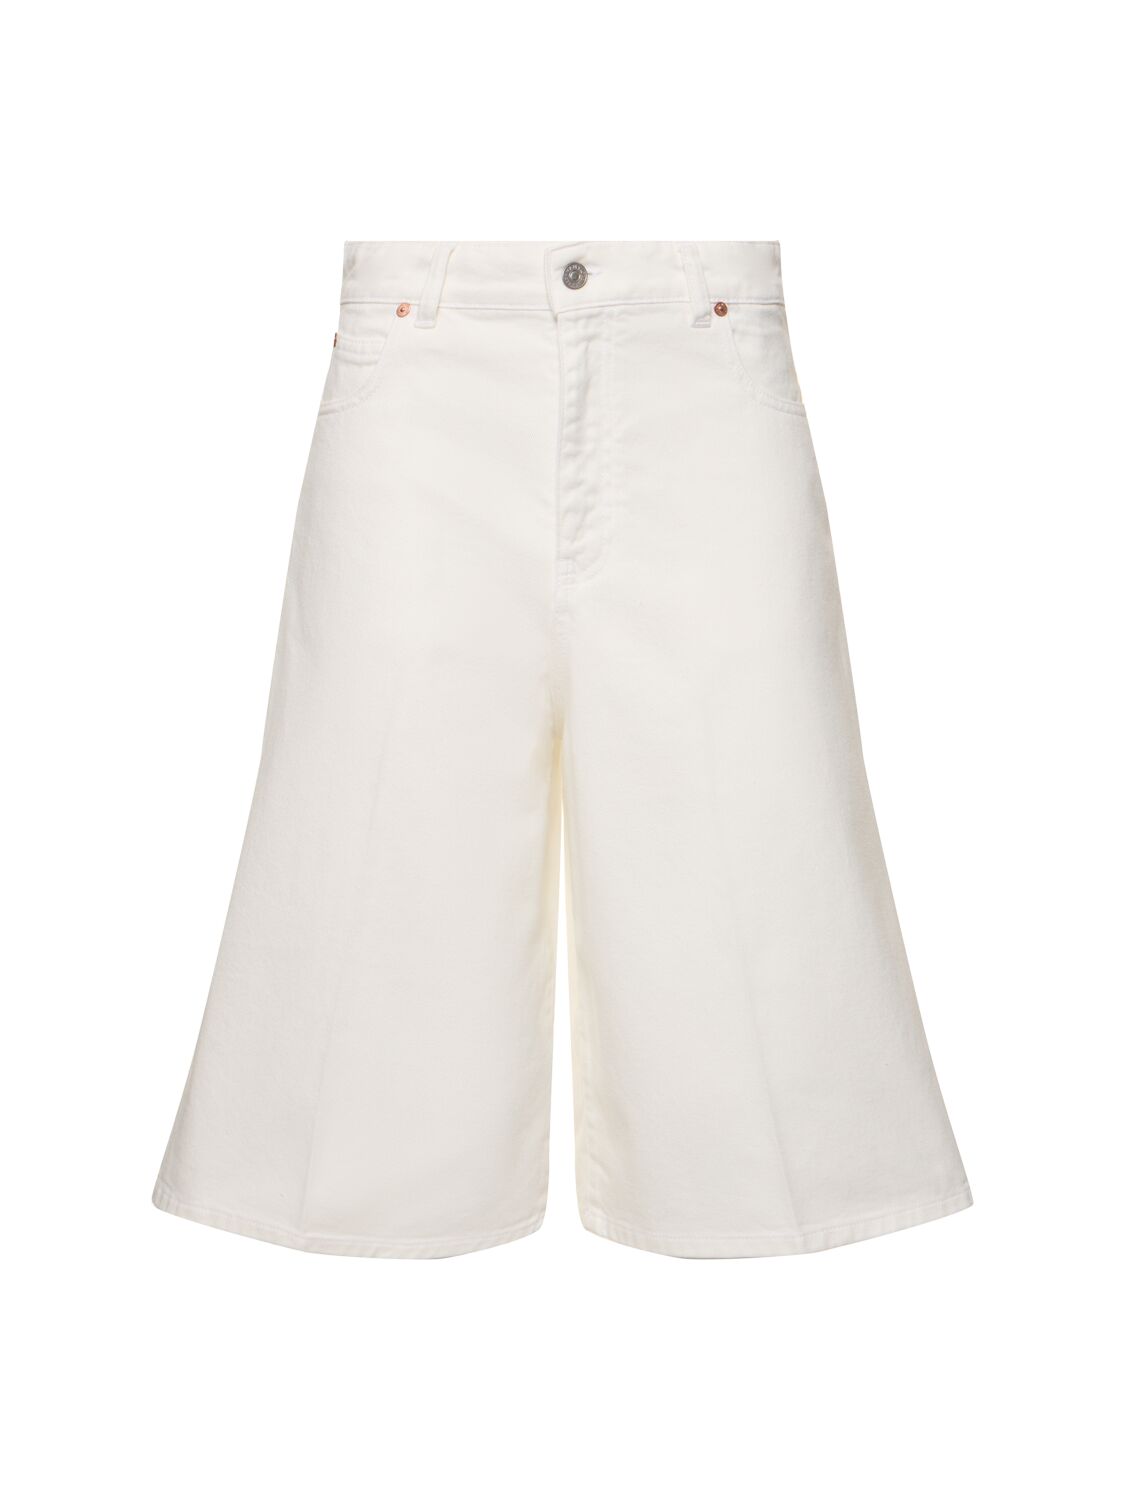 Image of Oversized Cotton Bermuda Shorts